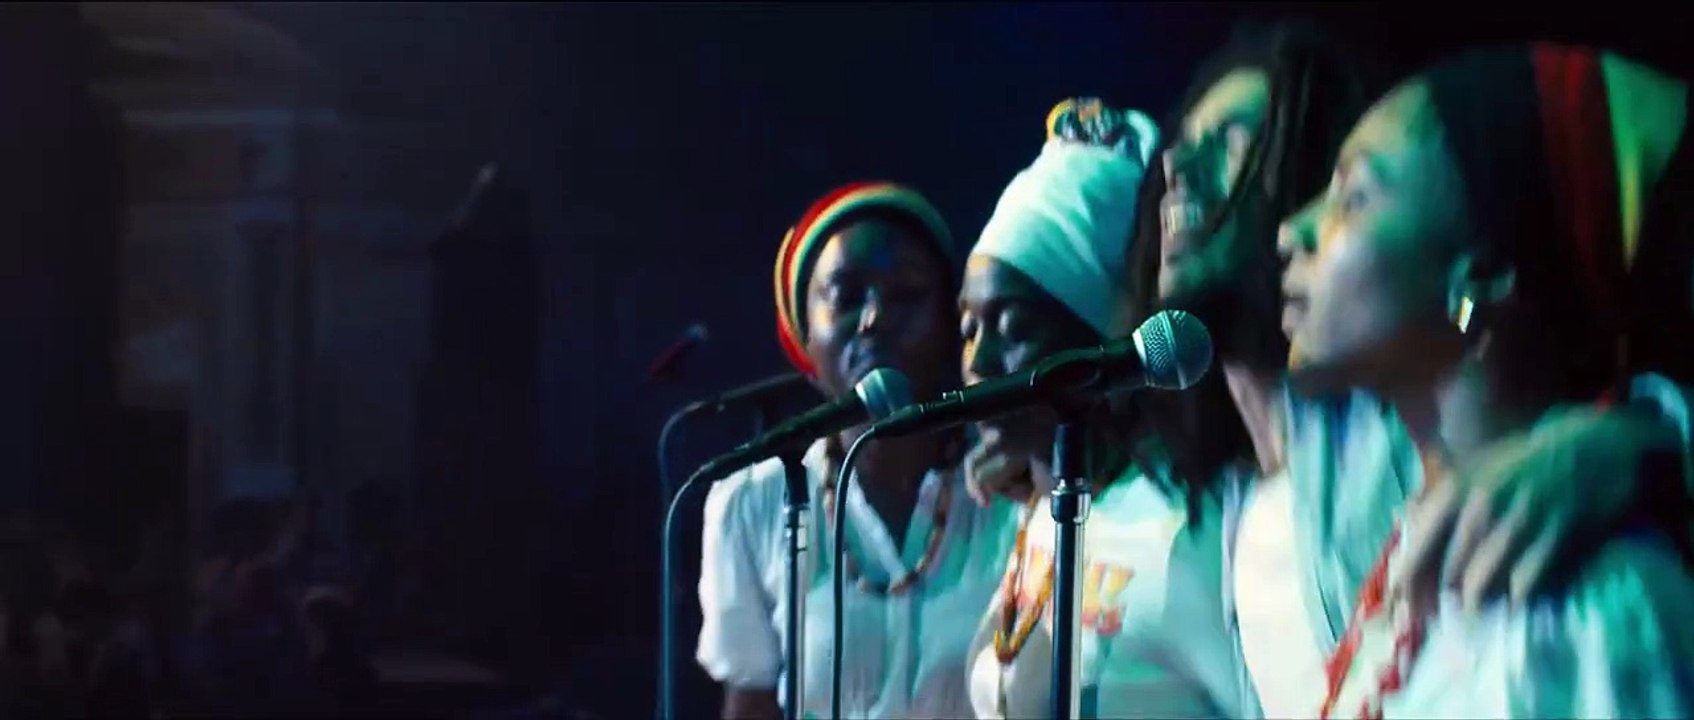 Bob Marley: One Love Trailer OV